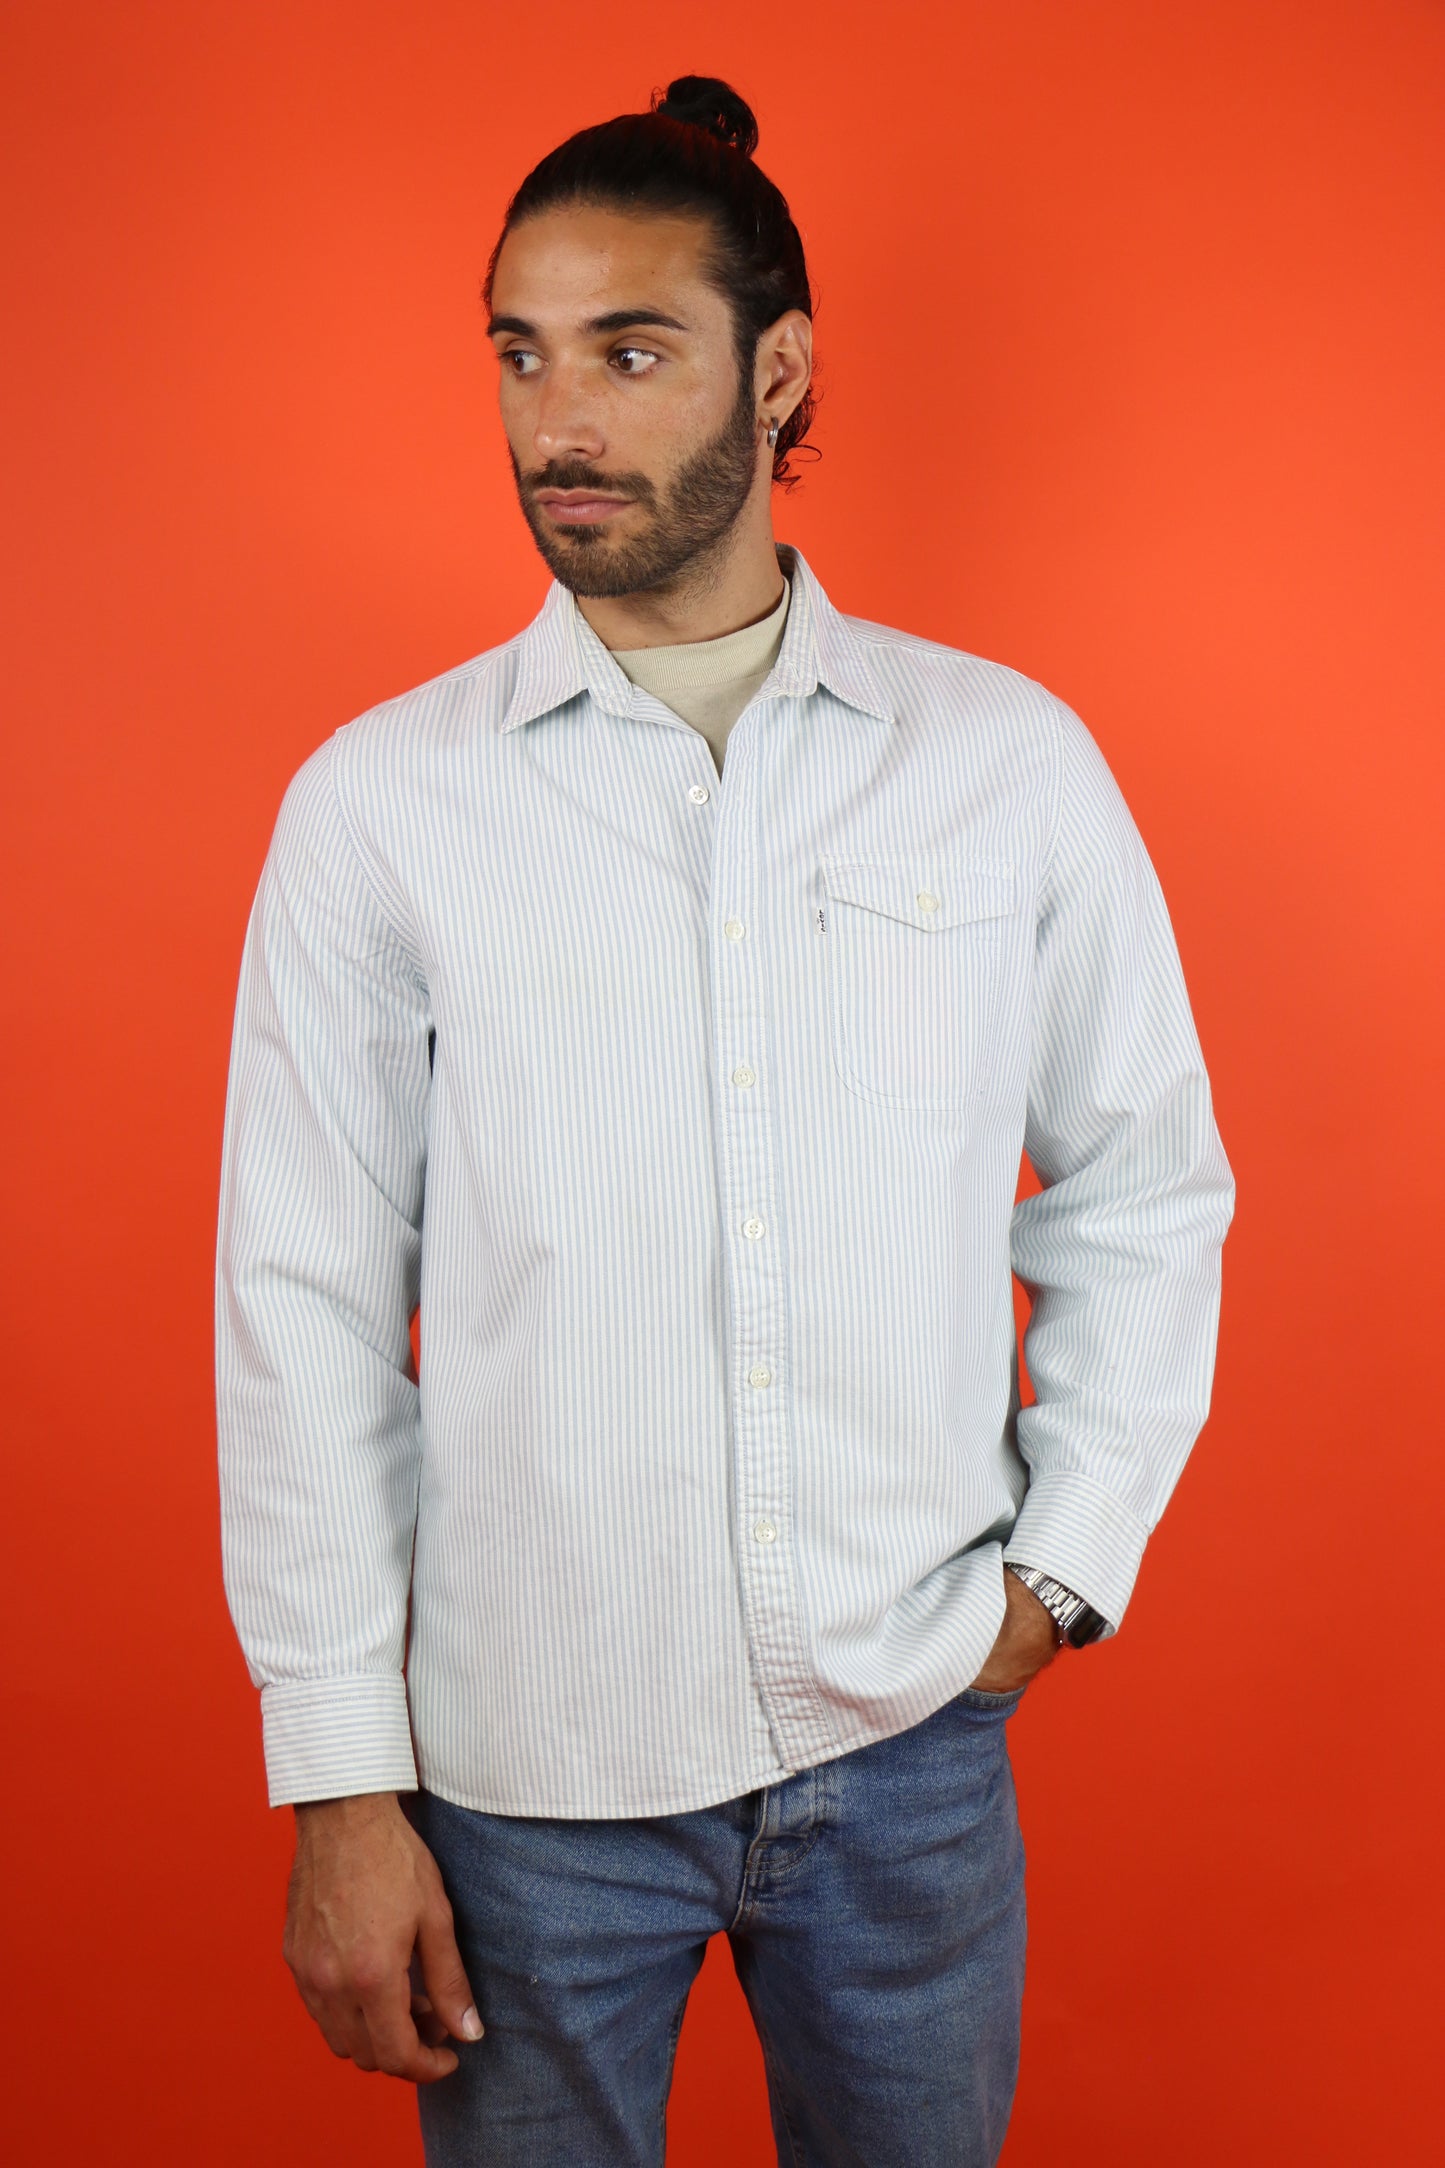 Levis Cotton Shirt - vintage clothing clochard92.com